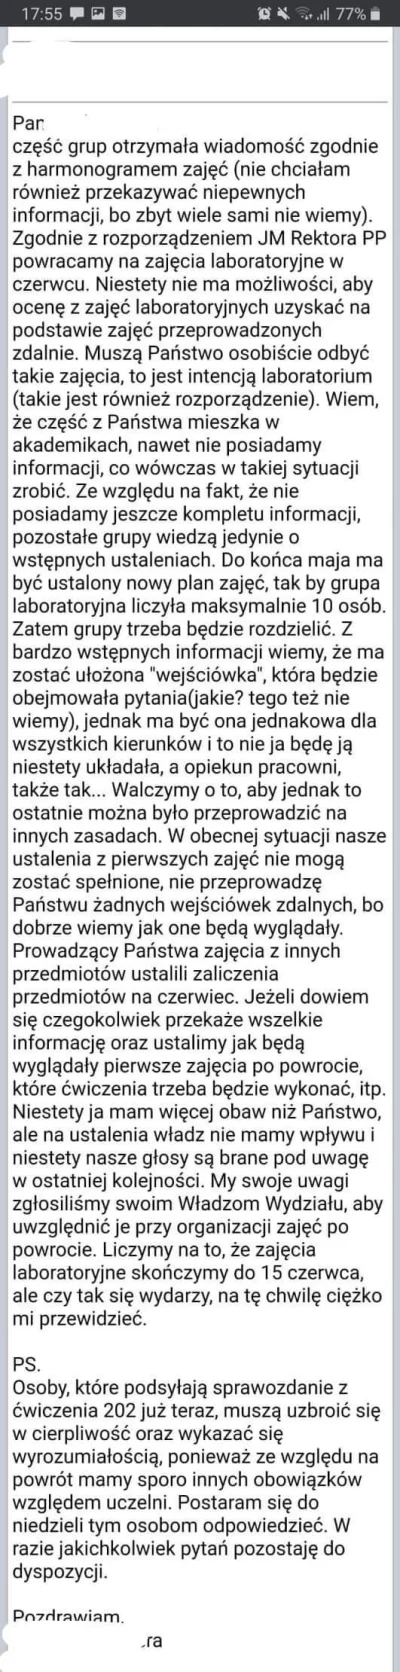 Need - #studbaza #studia

Polskie uczelnie w pigułce, znajomy mi podesłał tego scre...